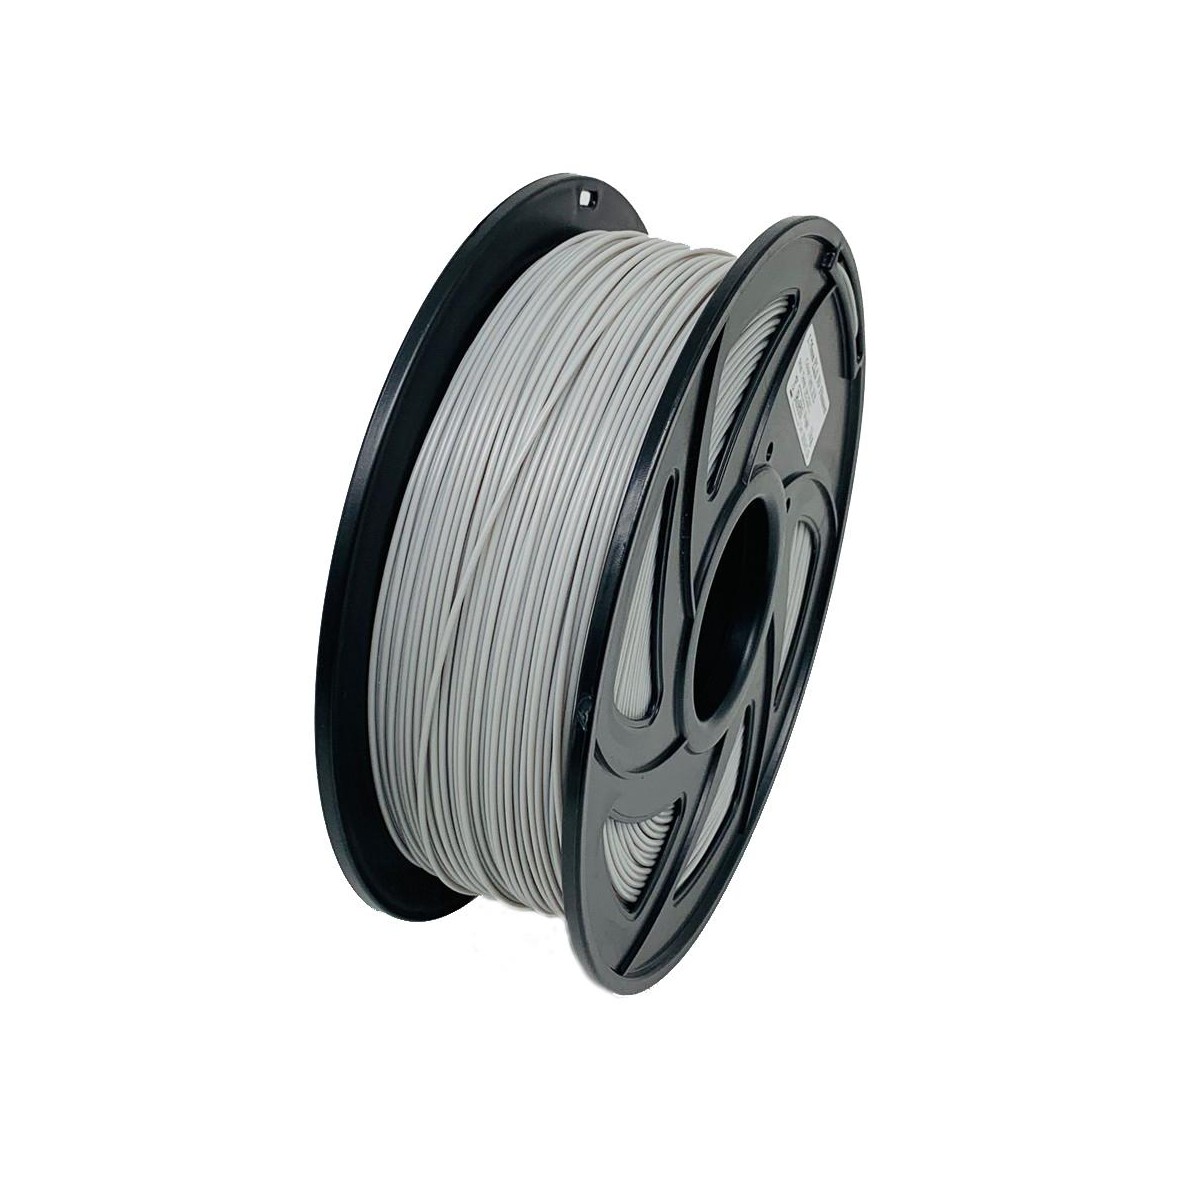 super-filament Filamento PLA PRO 1,75 mm 1 kg para impresoras 3D en colores RAL aluminio gris RAL 9007 